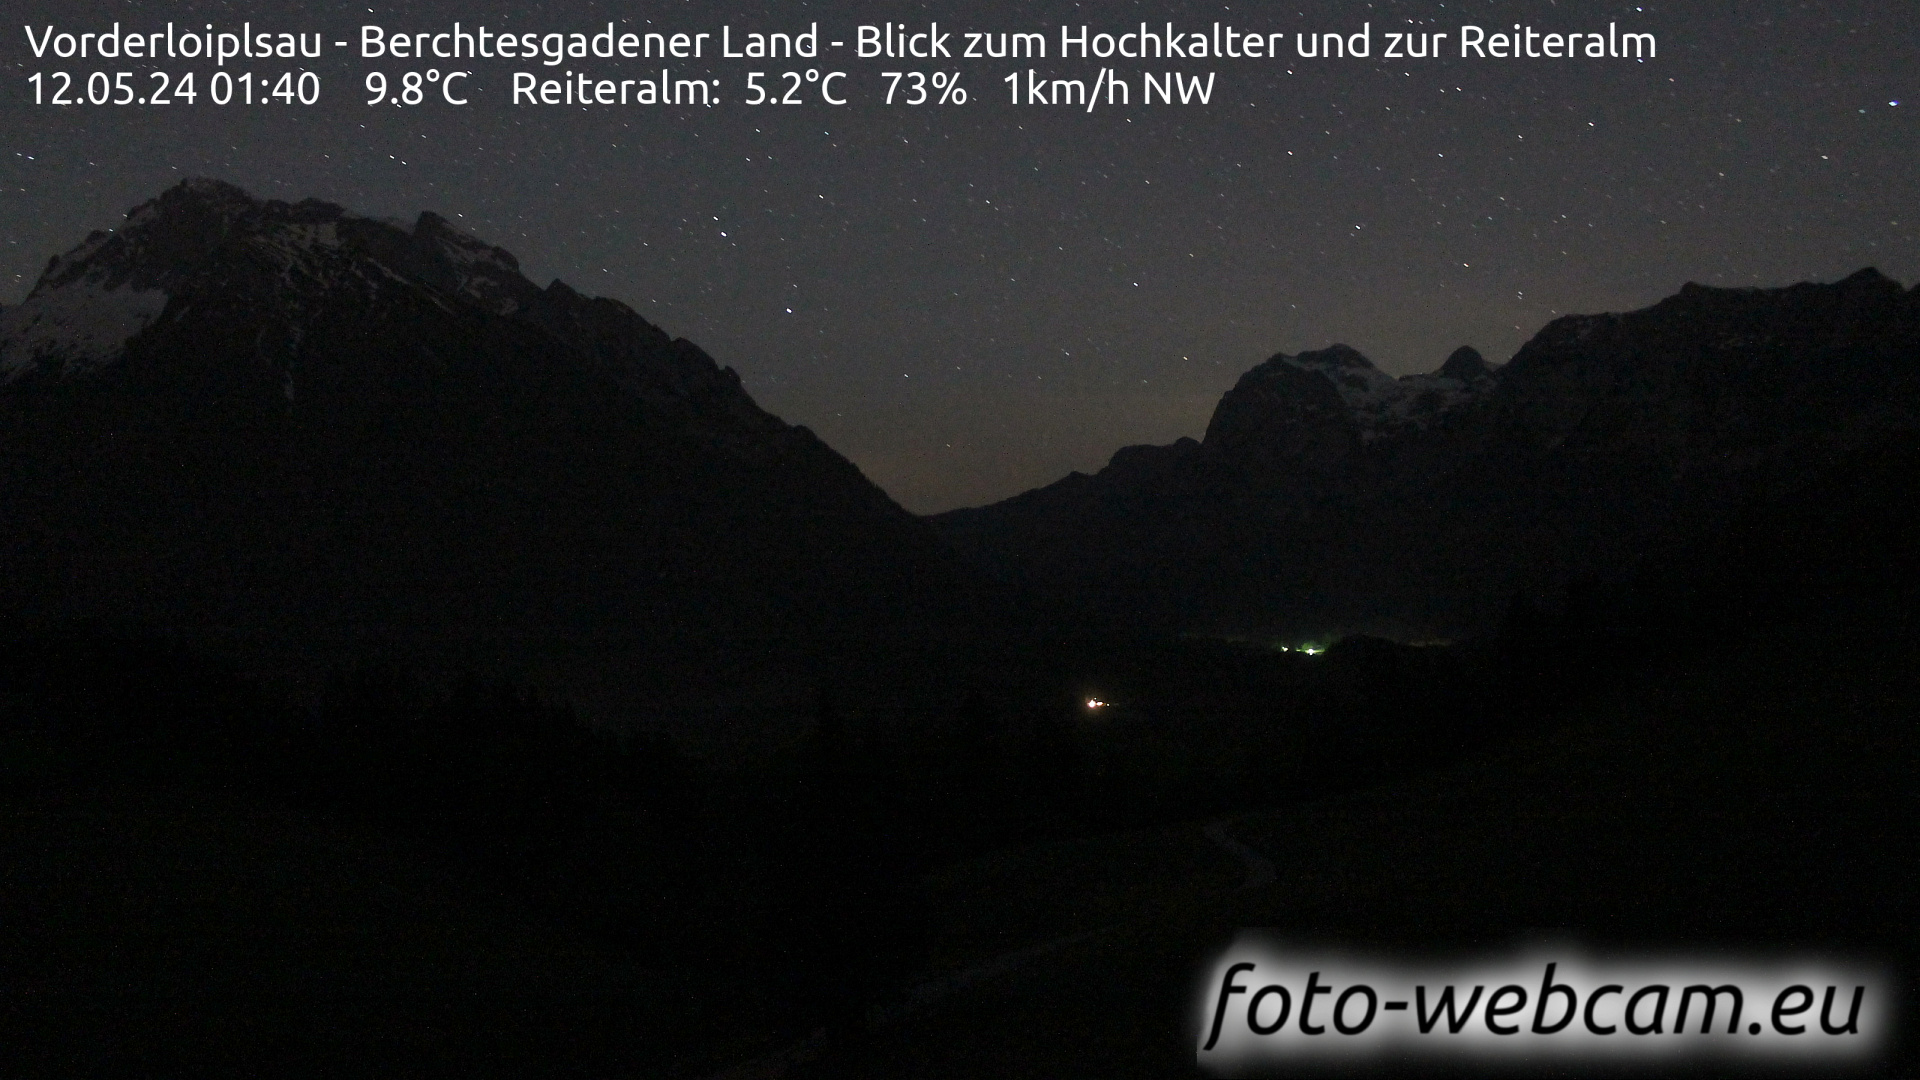 Ramsau bei Berchtesgaden Tor. 01:48